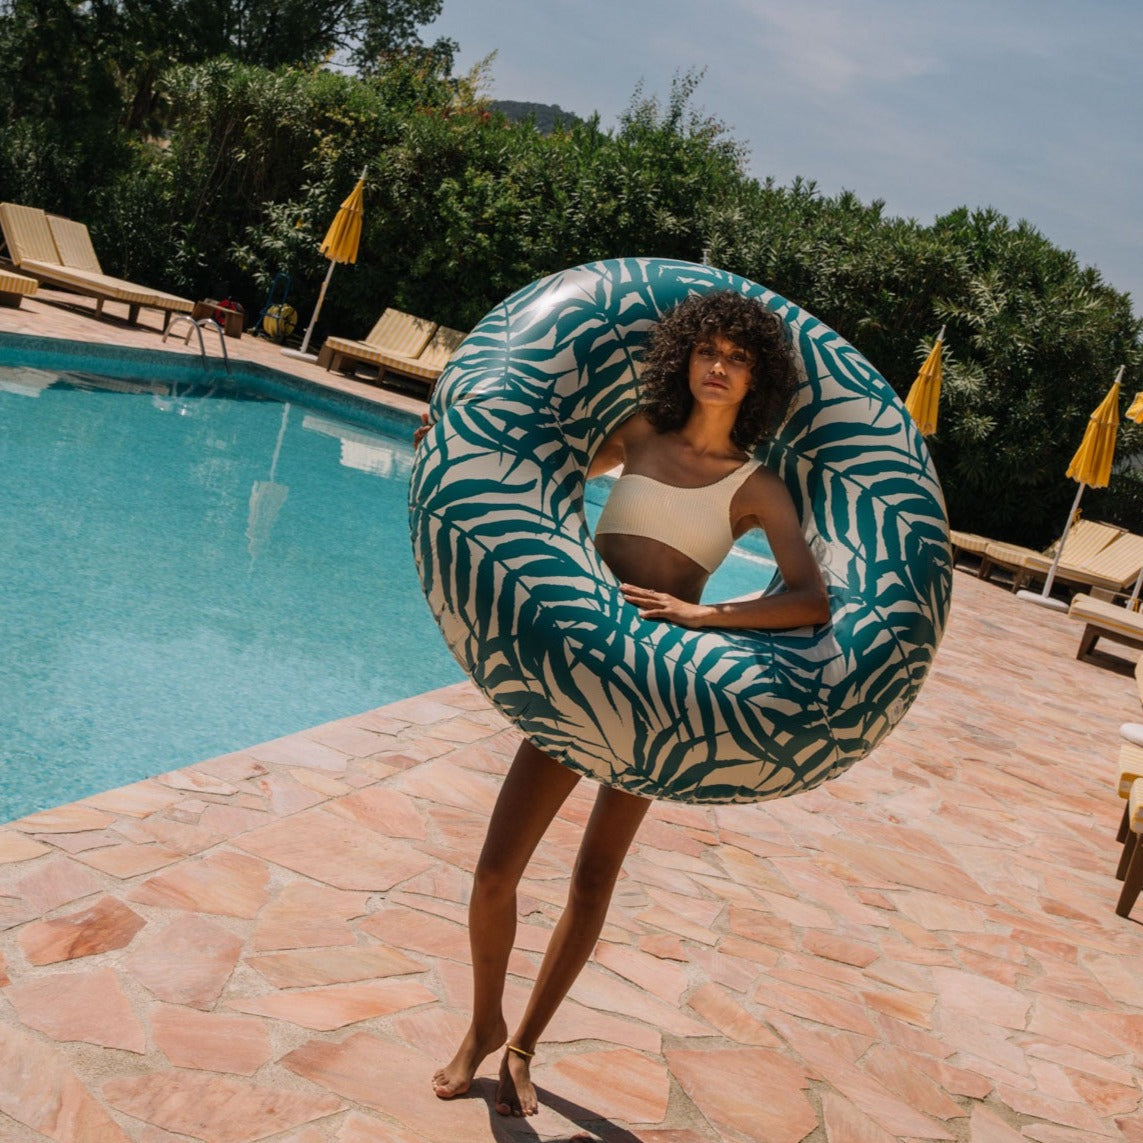 XL Inflatable Swim Ring | Bahia